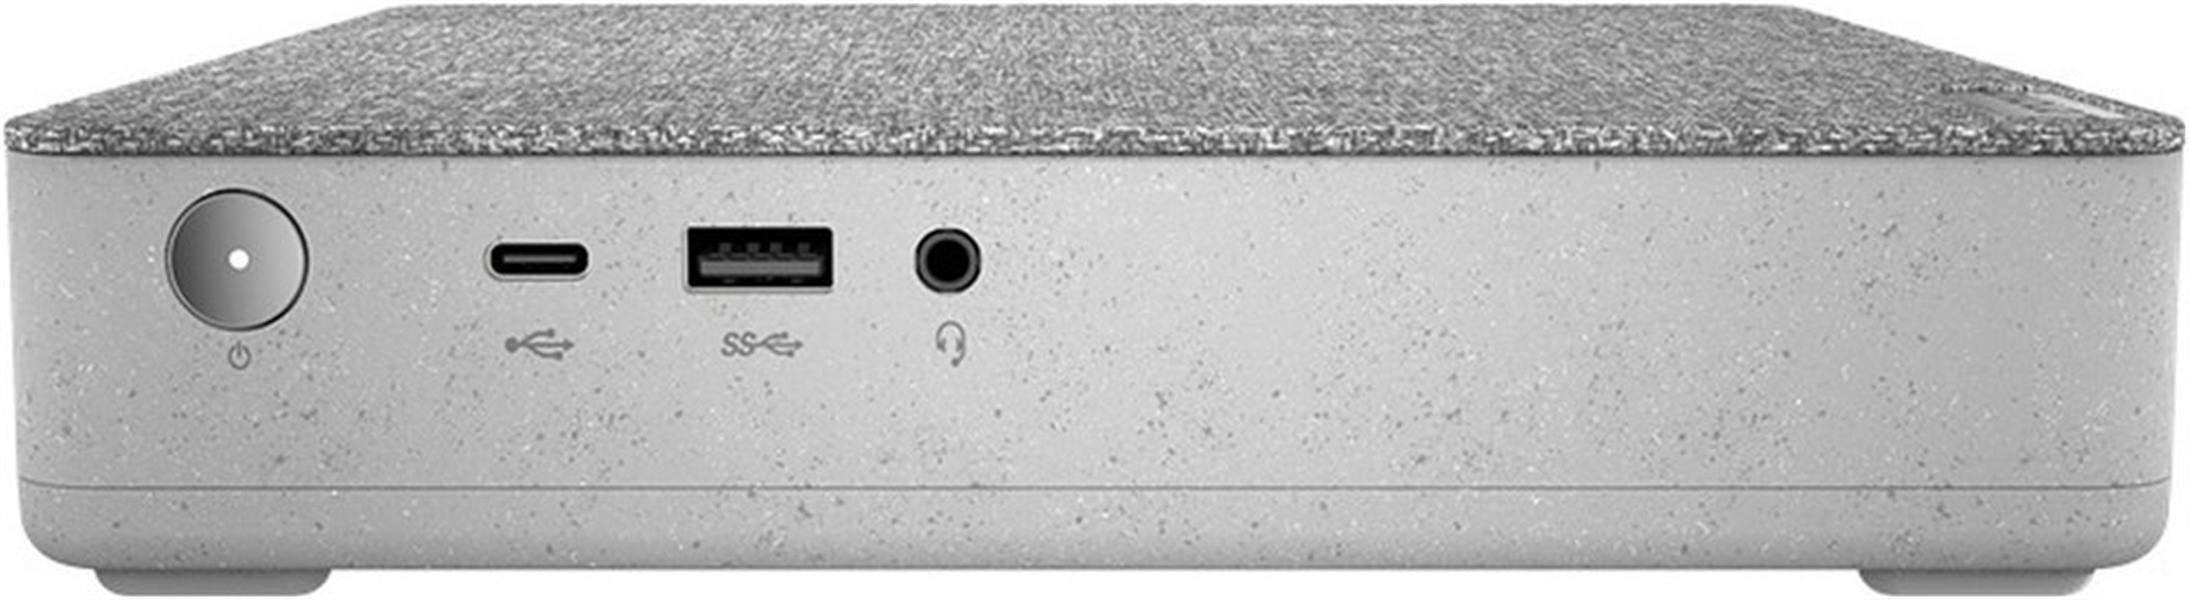 Lenovo IdeaCentre Mini 5 / I5-10400T/ 16GB / 512GB / W10P